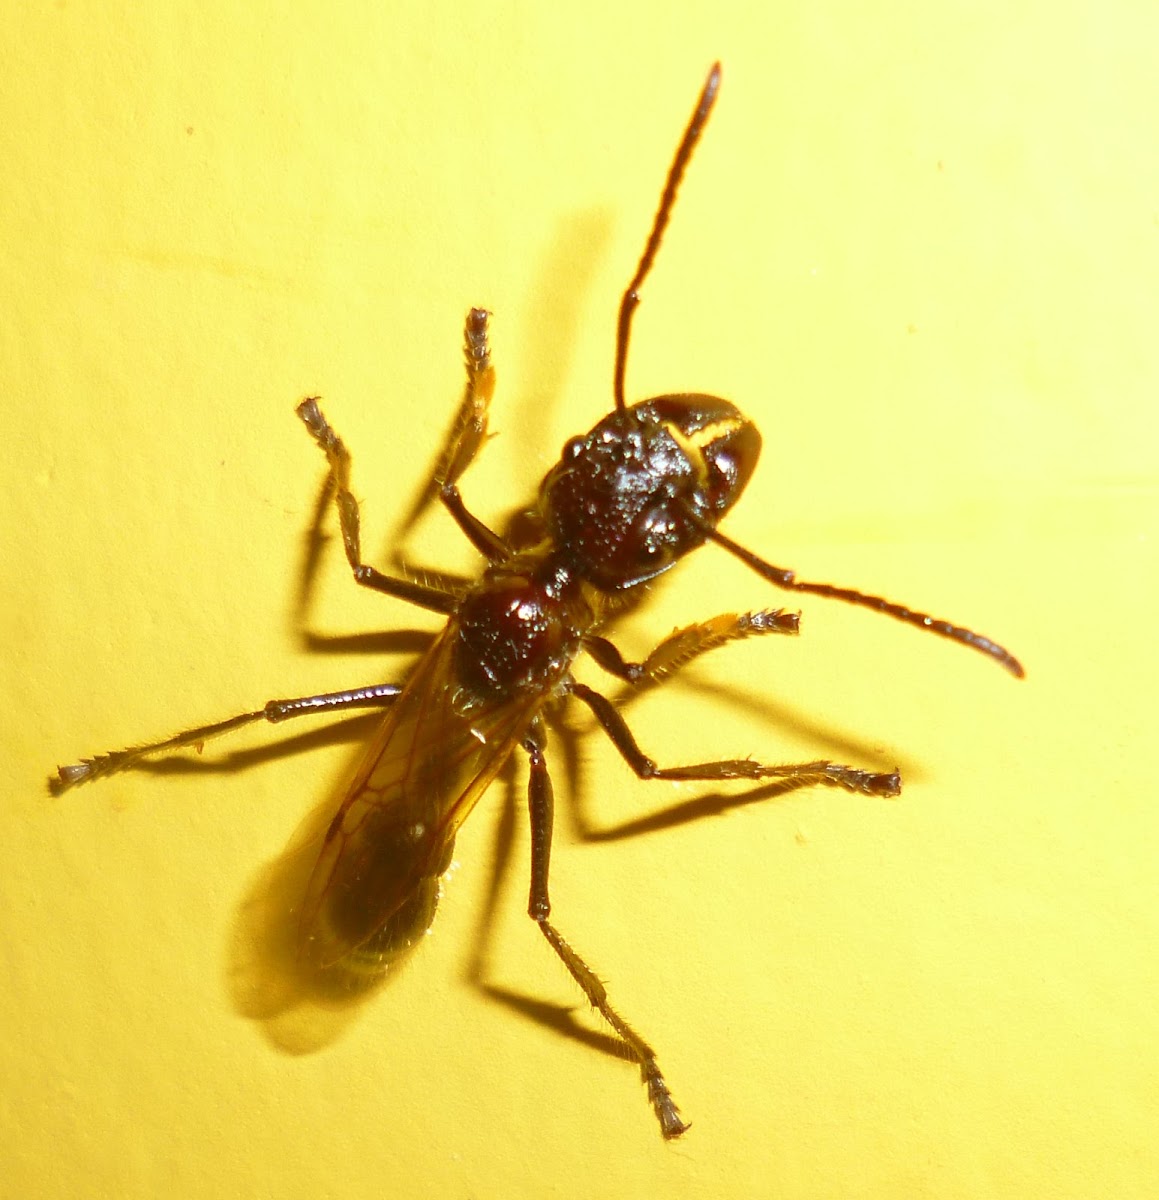 Bullet Ant - Hormiga Bala - Folofa